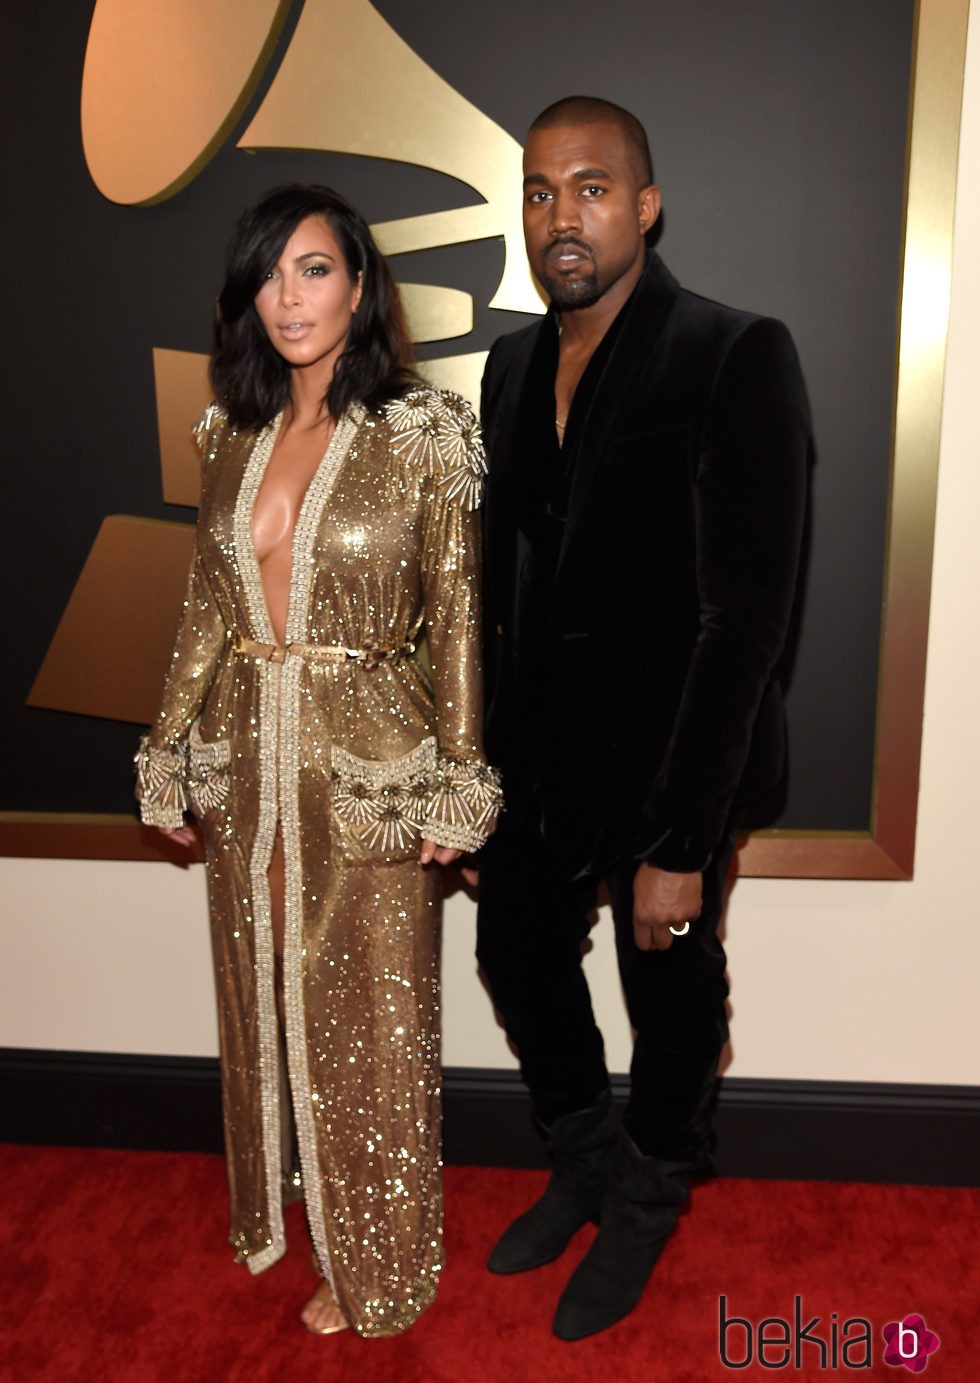 Kim Kardashian y Kanye West en los Grammy 2015